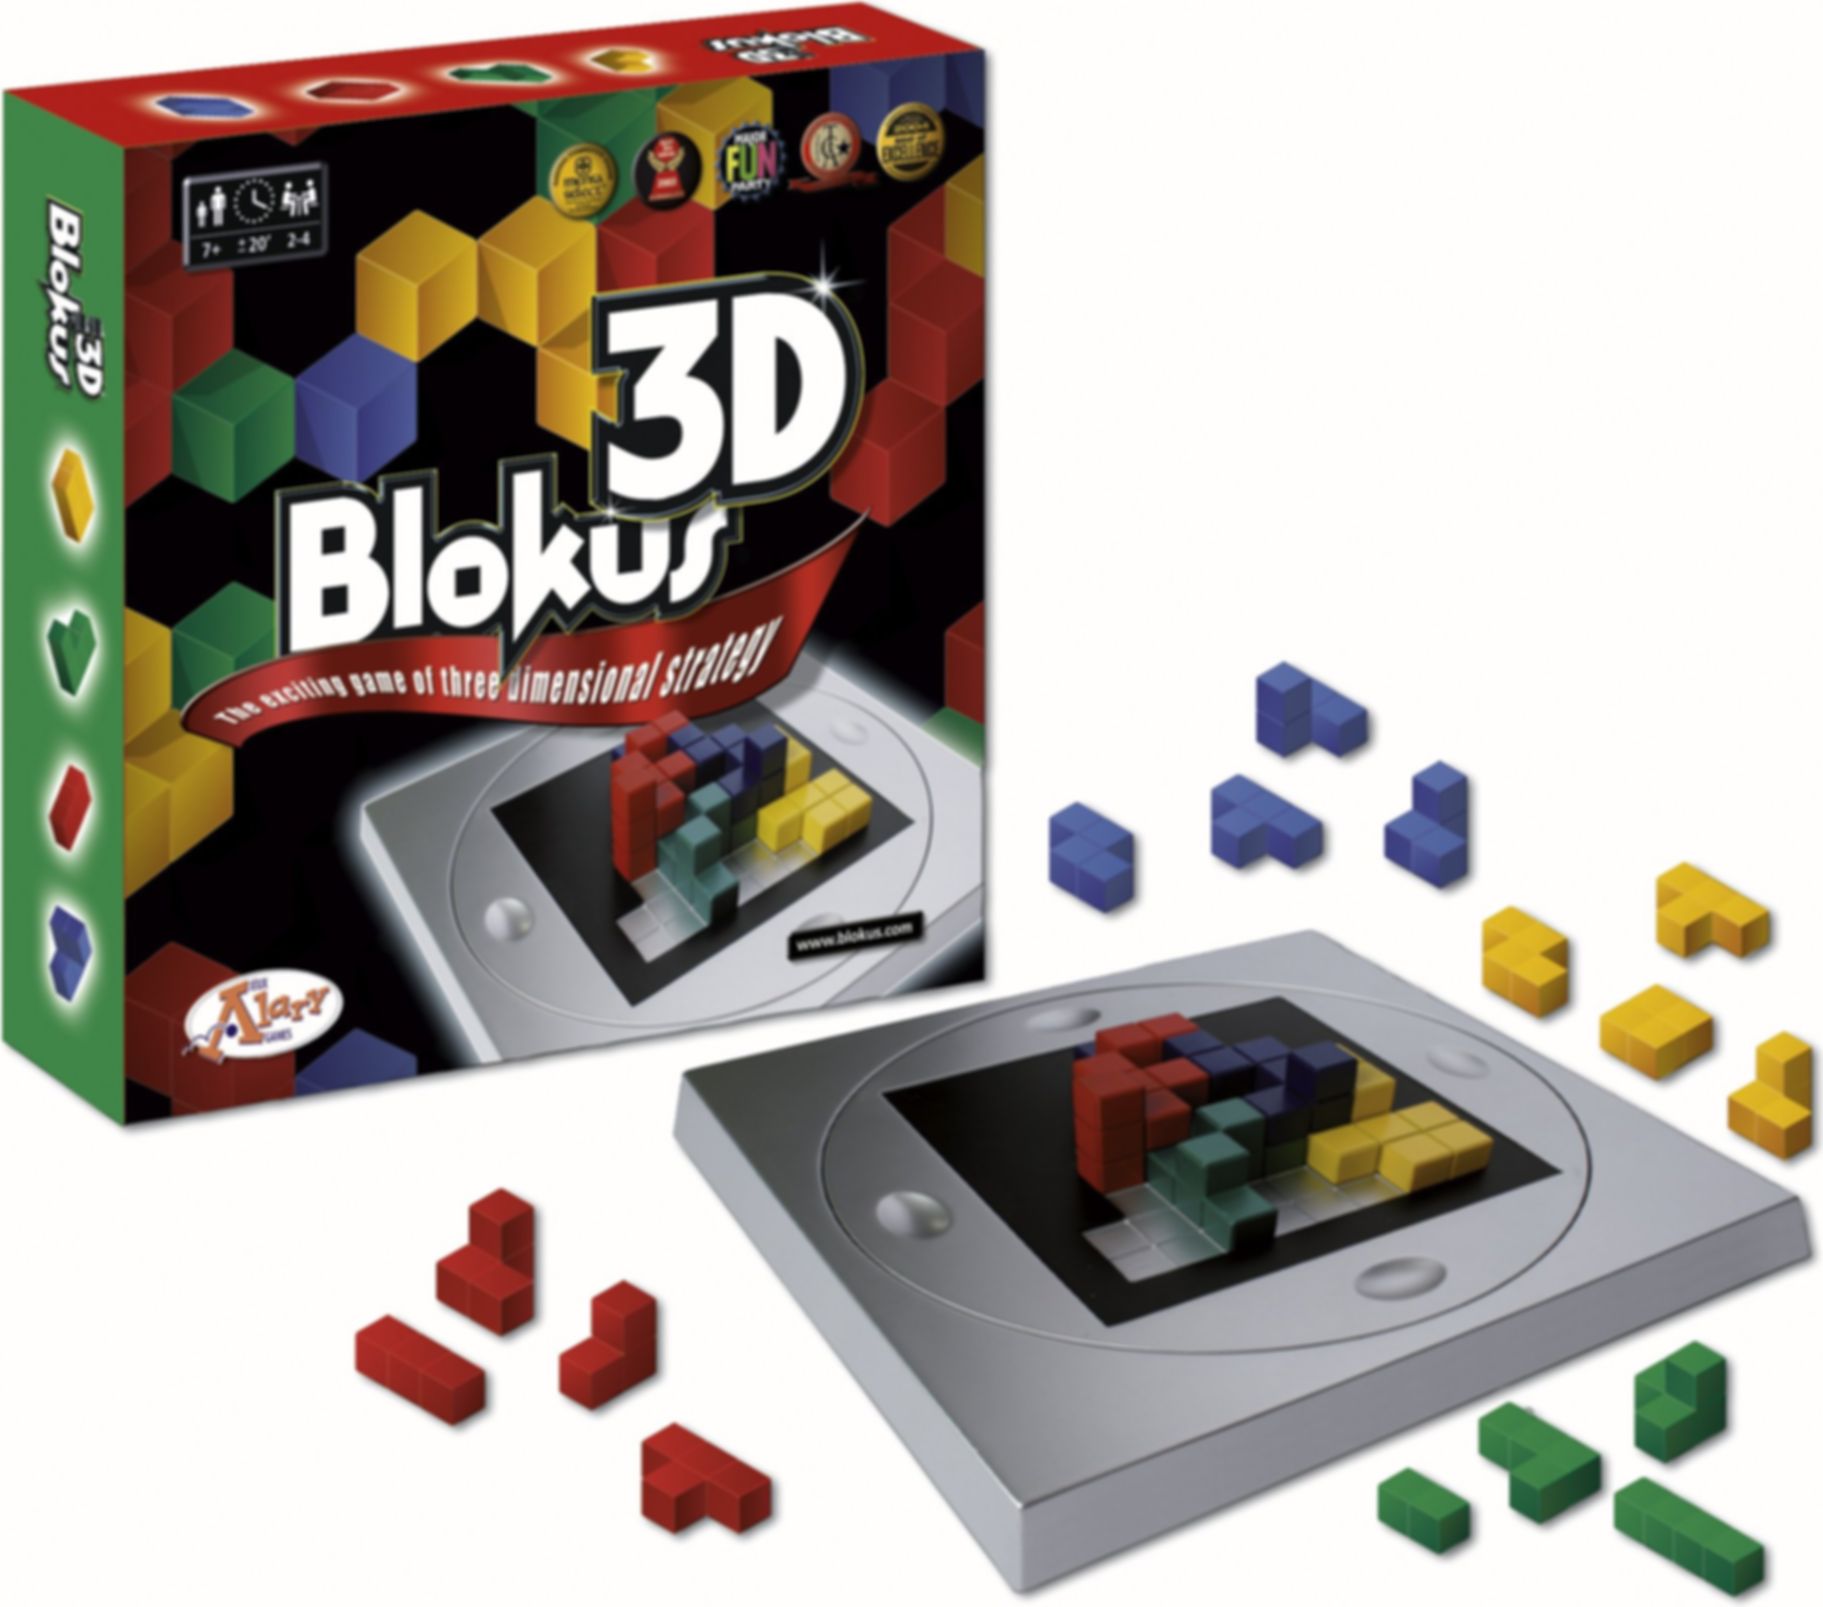 Blokus 3D kopen aan beste prijs - TableTopFinder